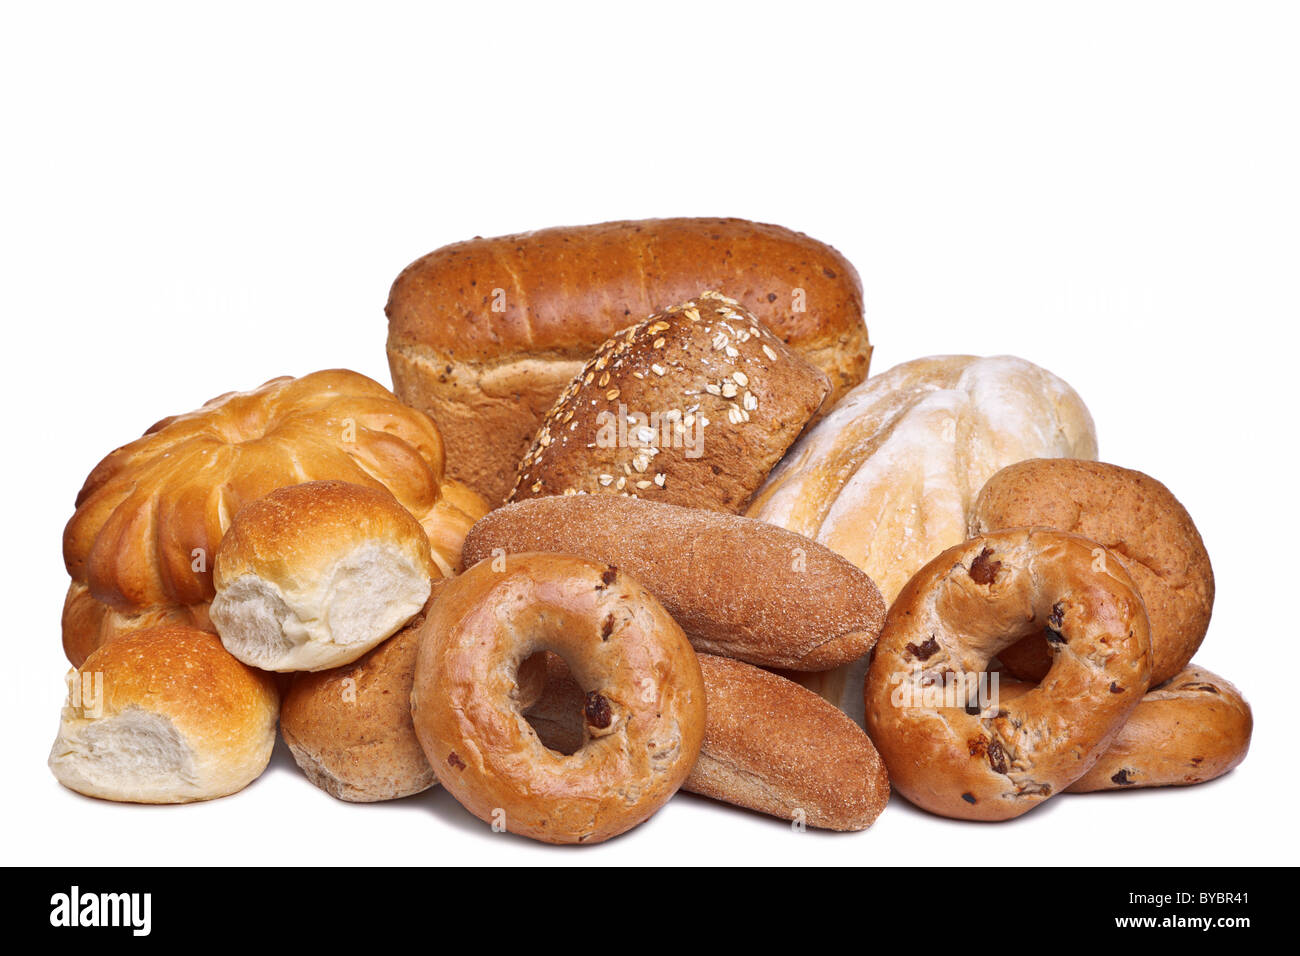 Foto von verschiedenen Brotsorten isoliert auf einem weißen Hintergrund. Stockfoto